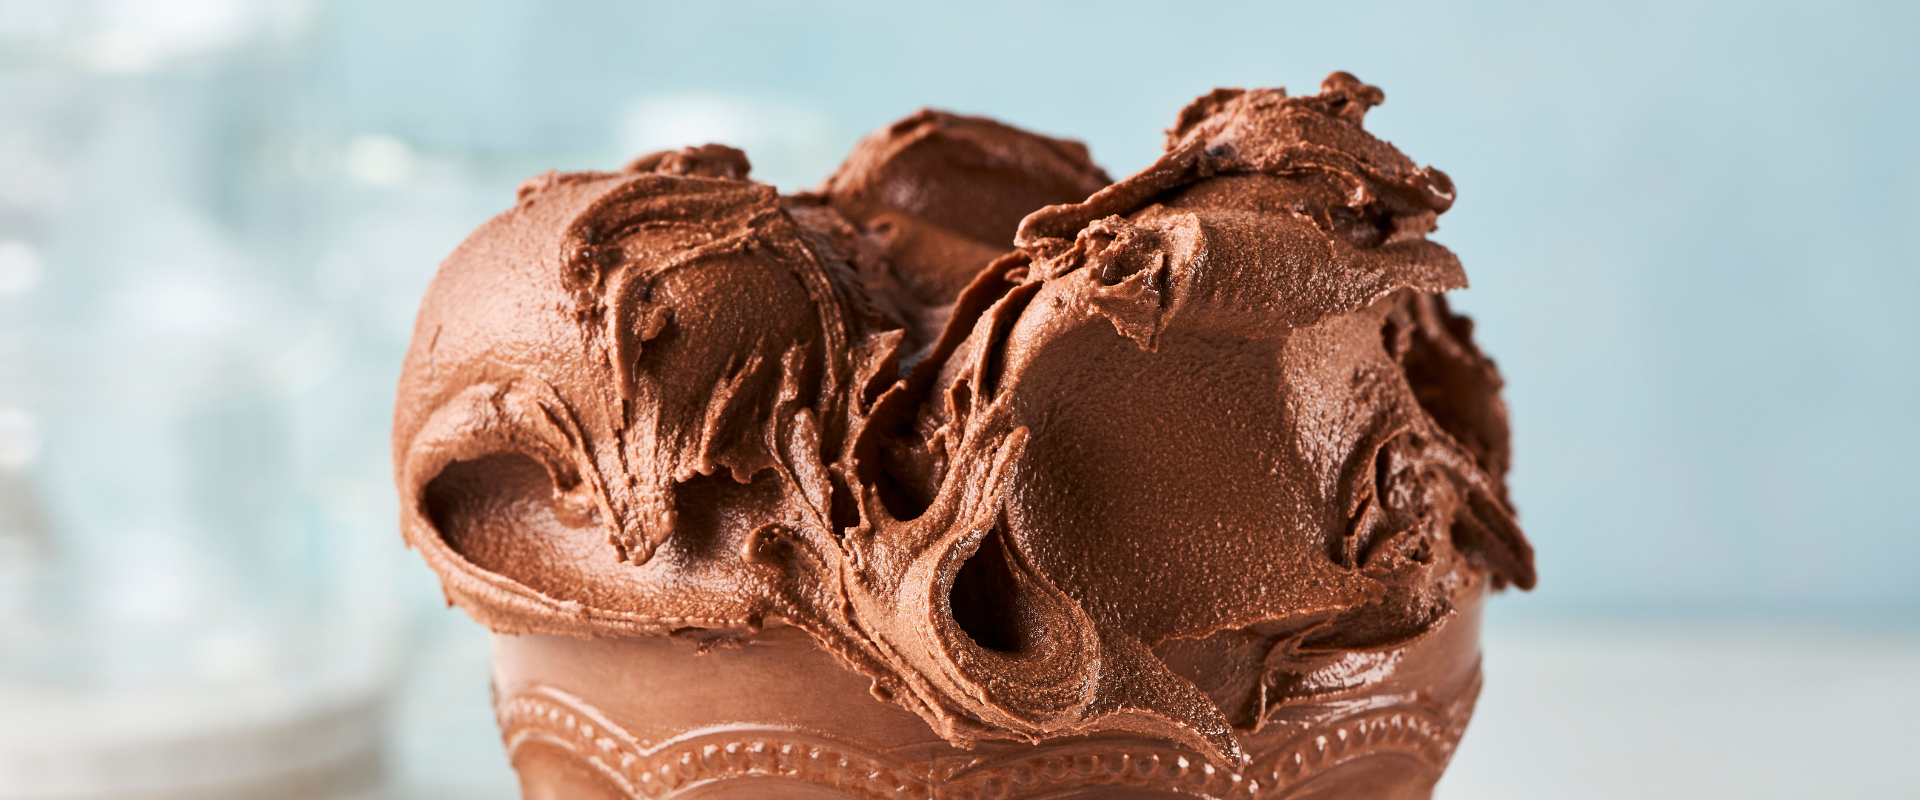 Simplé Fabbri: il buon gelato artigianale in soli 10 minuti. Scopri la gamma!